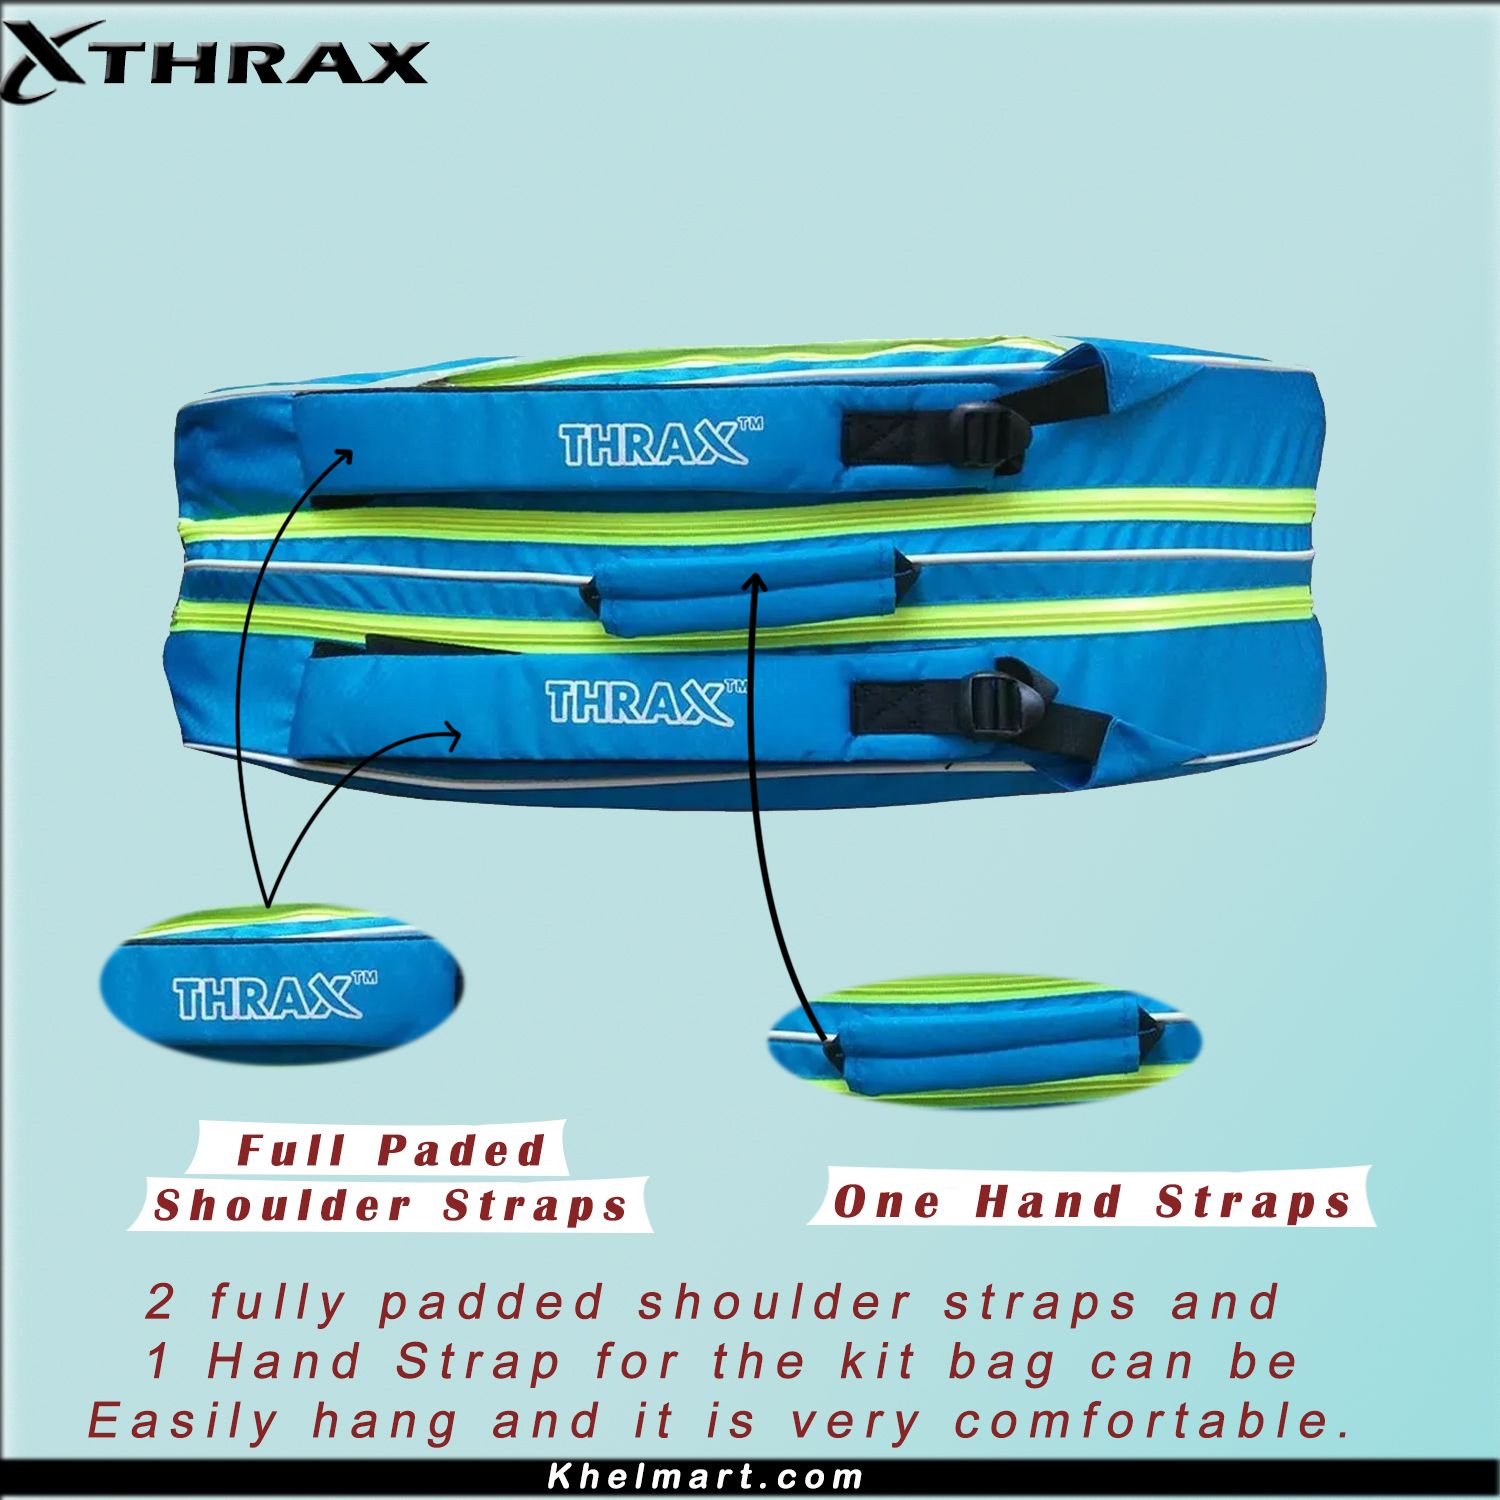 Thrax MX 01 Badminton Kit Bag Sky Blue And Lime